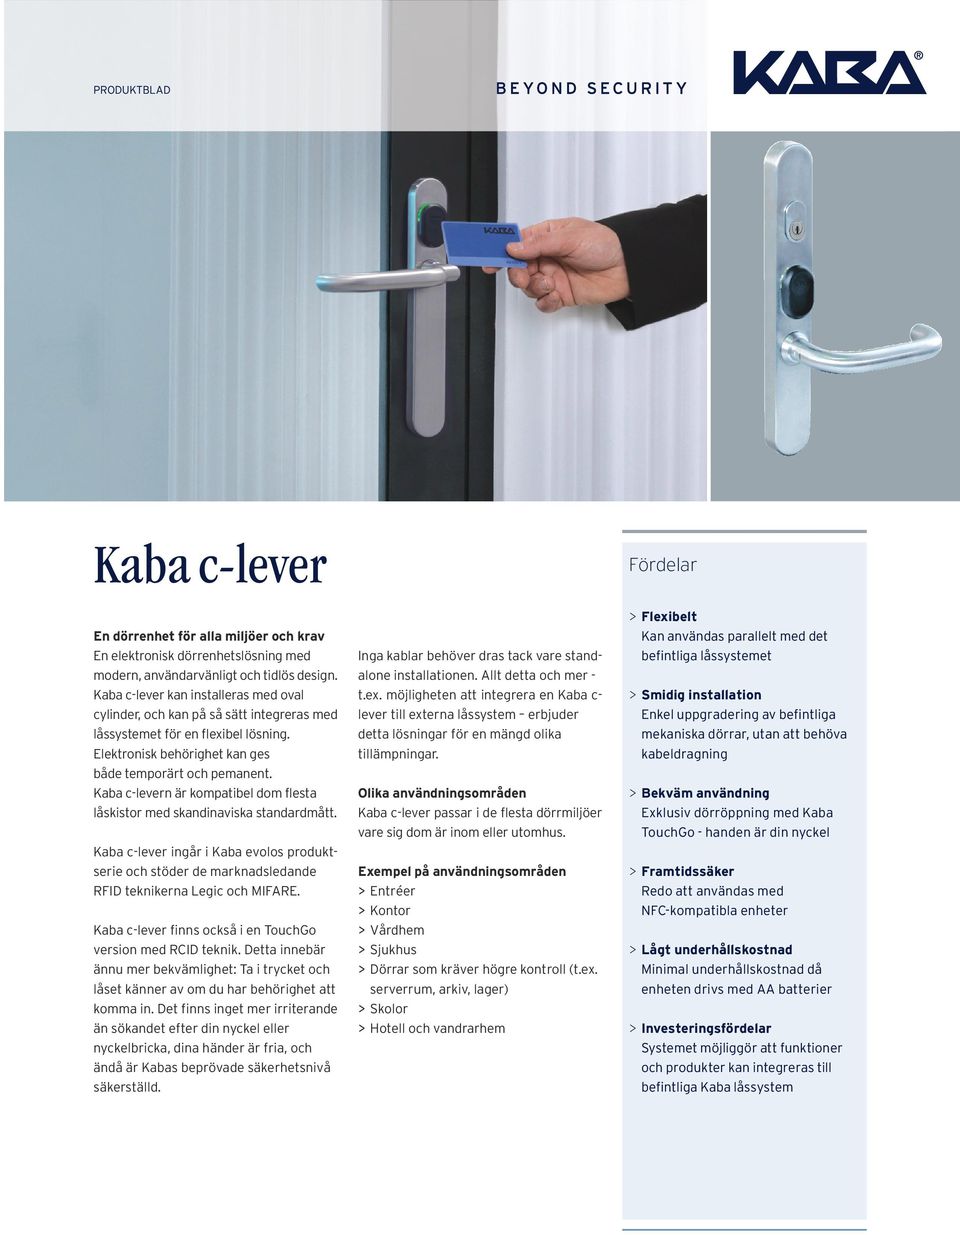 Kaba c-levern är kompatibel dom flesta låskistor med skandinaviska standardmått. Kaba c-lever ingår i Kaba evolos produktserie och stöder de marknadsledande RFID teknikerna Legic och MIFARE.